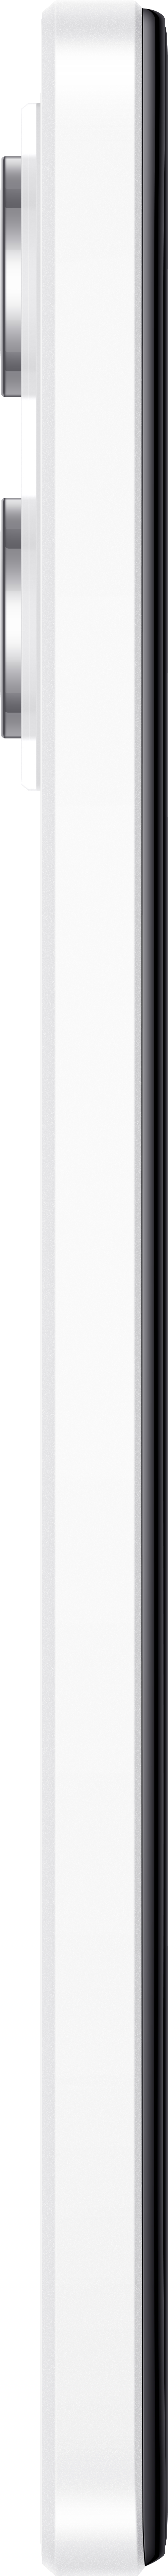 12 SIM Dual Note Redmi Pro 128 GB Polar 5G XIAOMI White